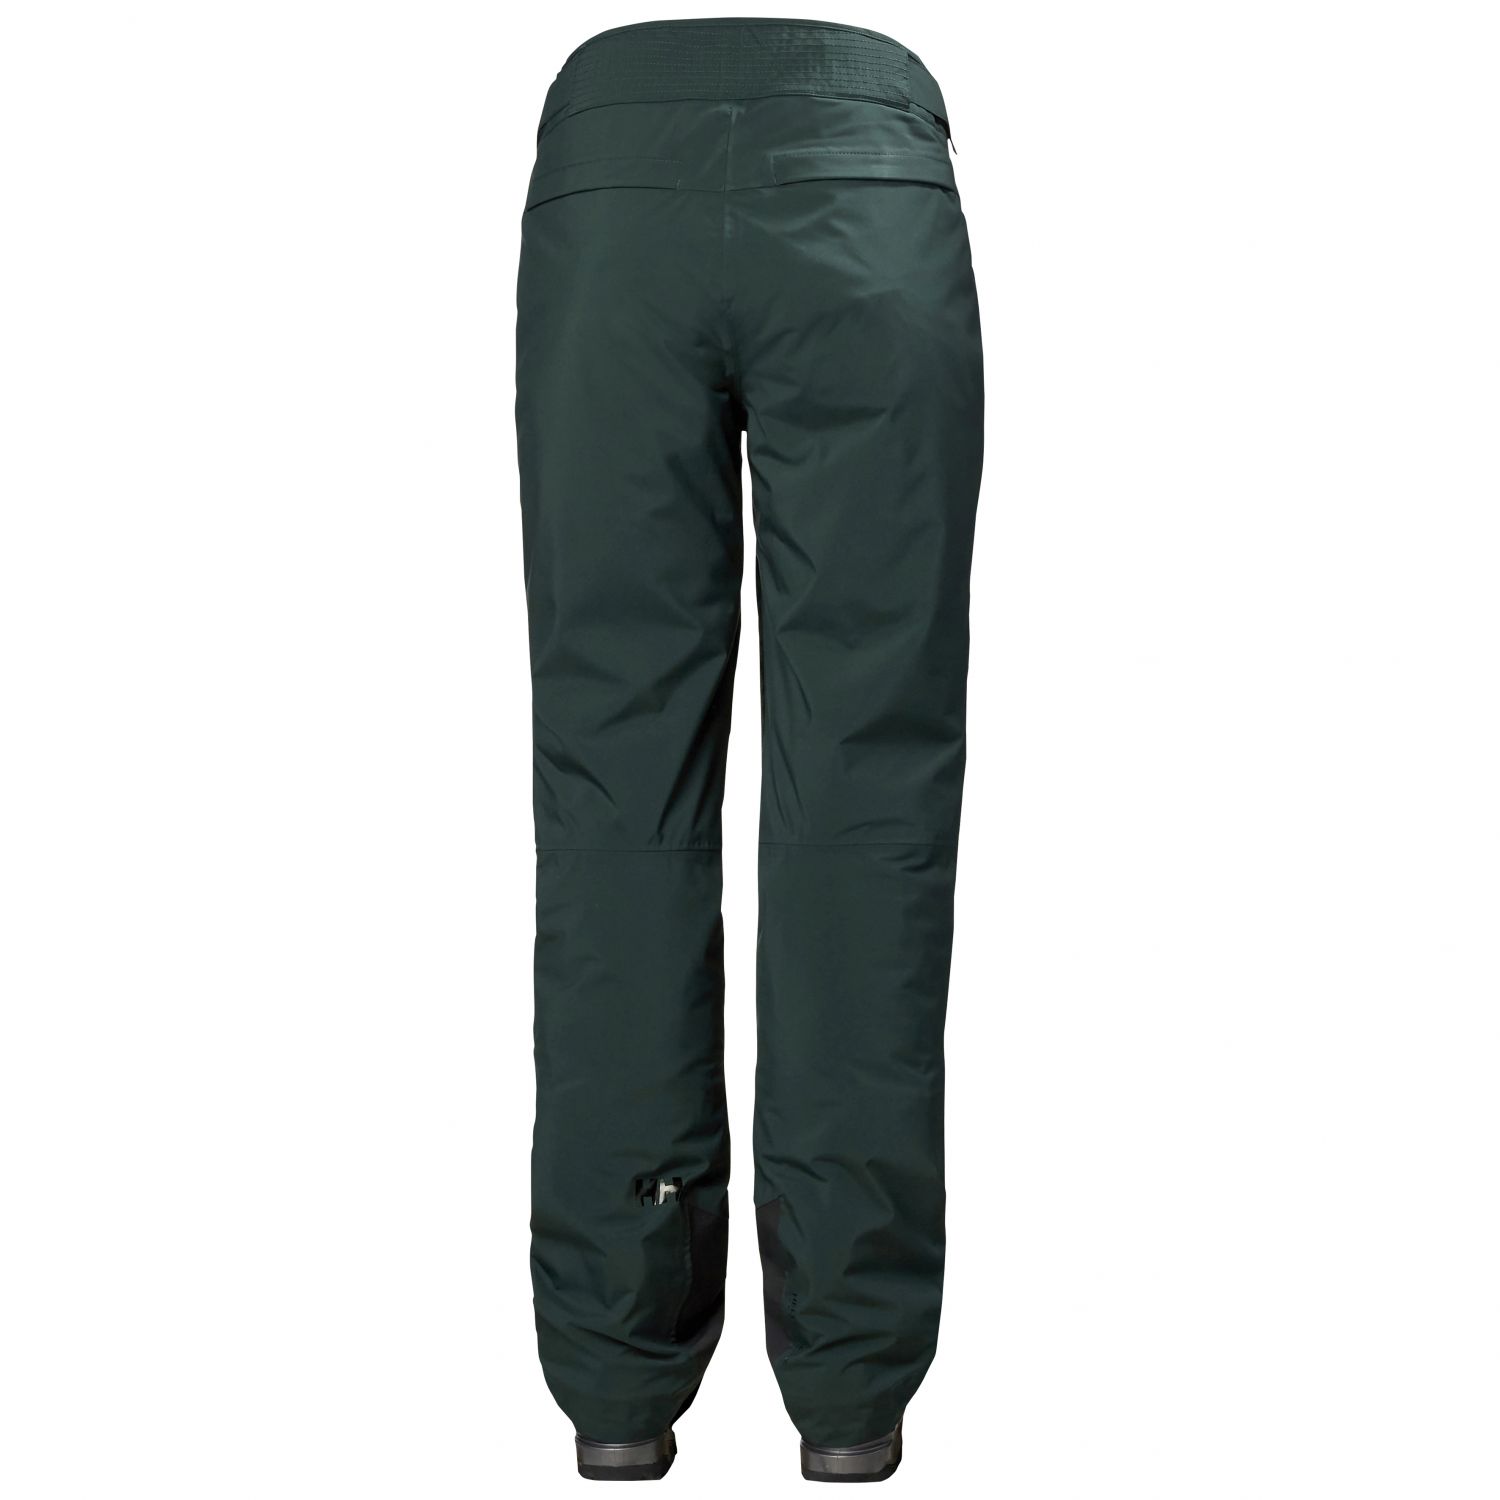 Helly Hansen Legendary Insulated pantalons de ski, femmes, vert foncé